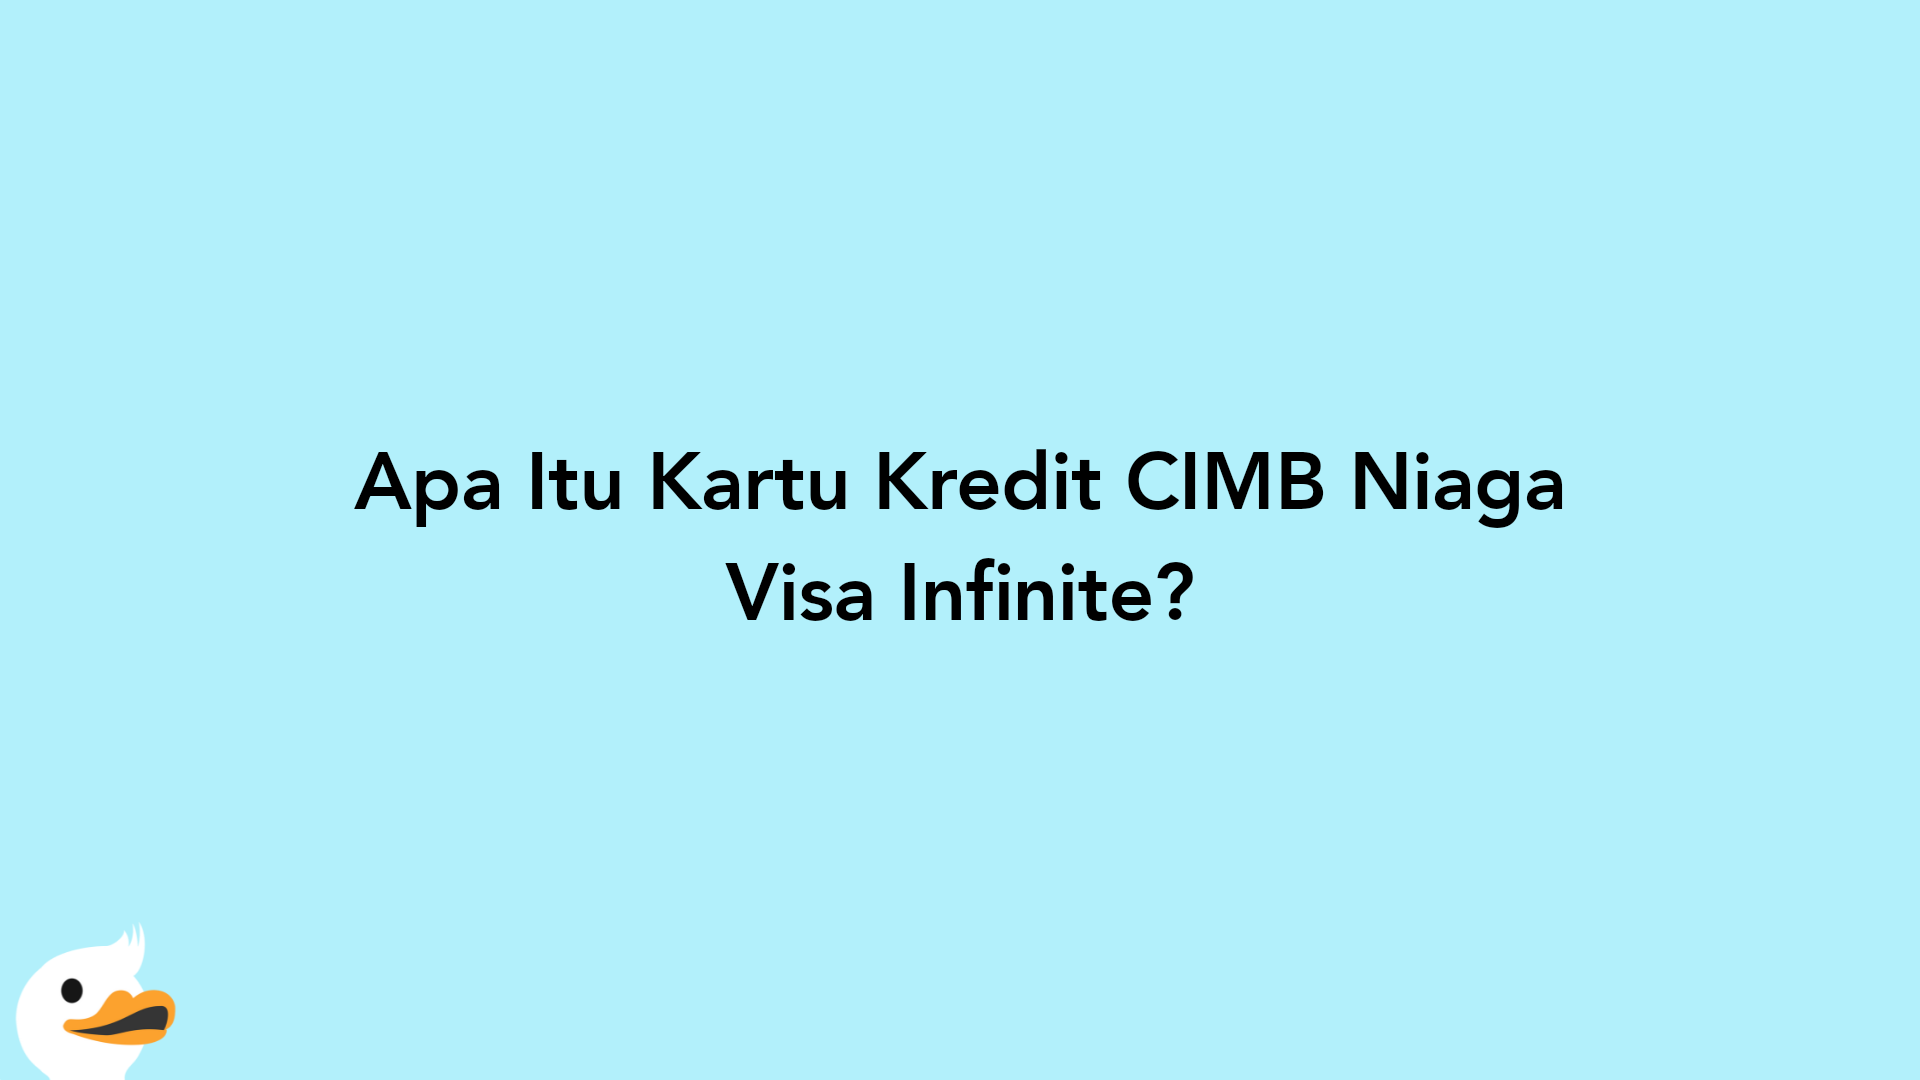 Apa Itu Kartu Kredit CIMB Niaga Visa Infinite?